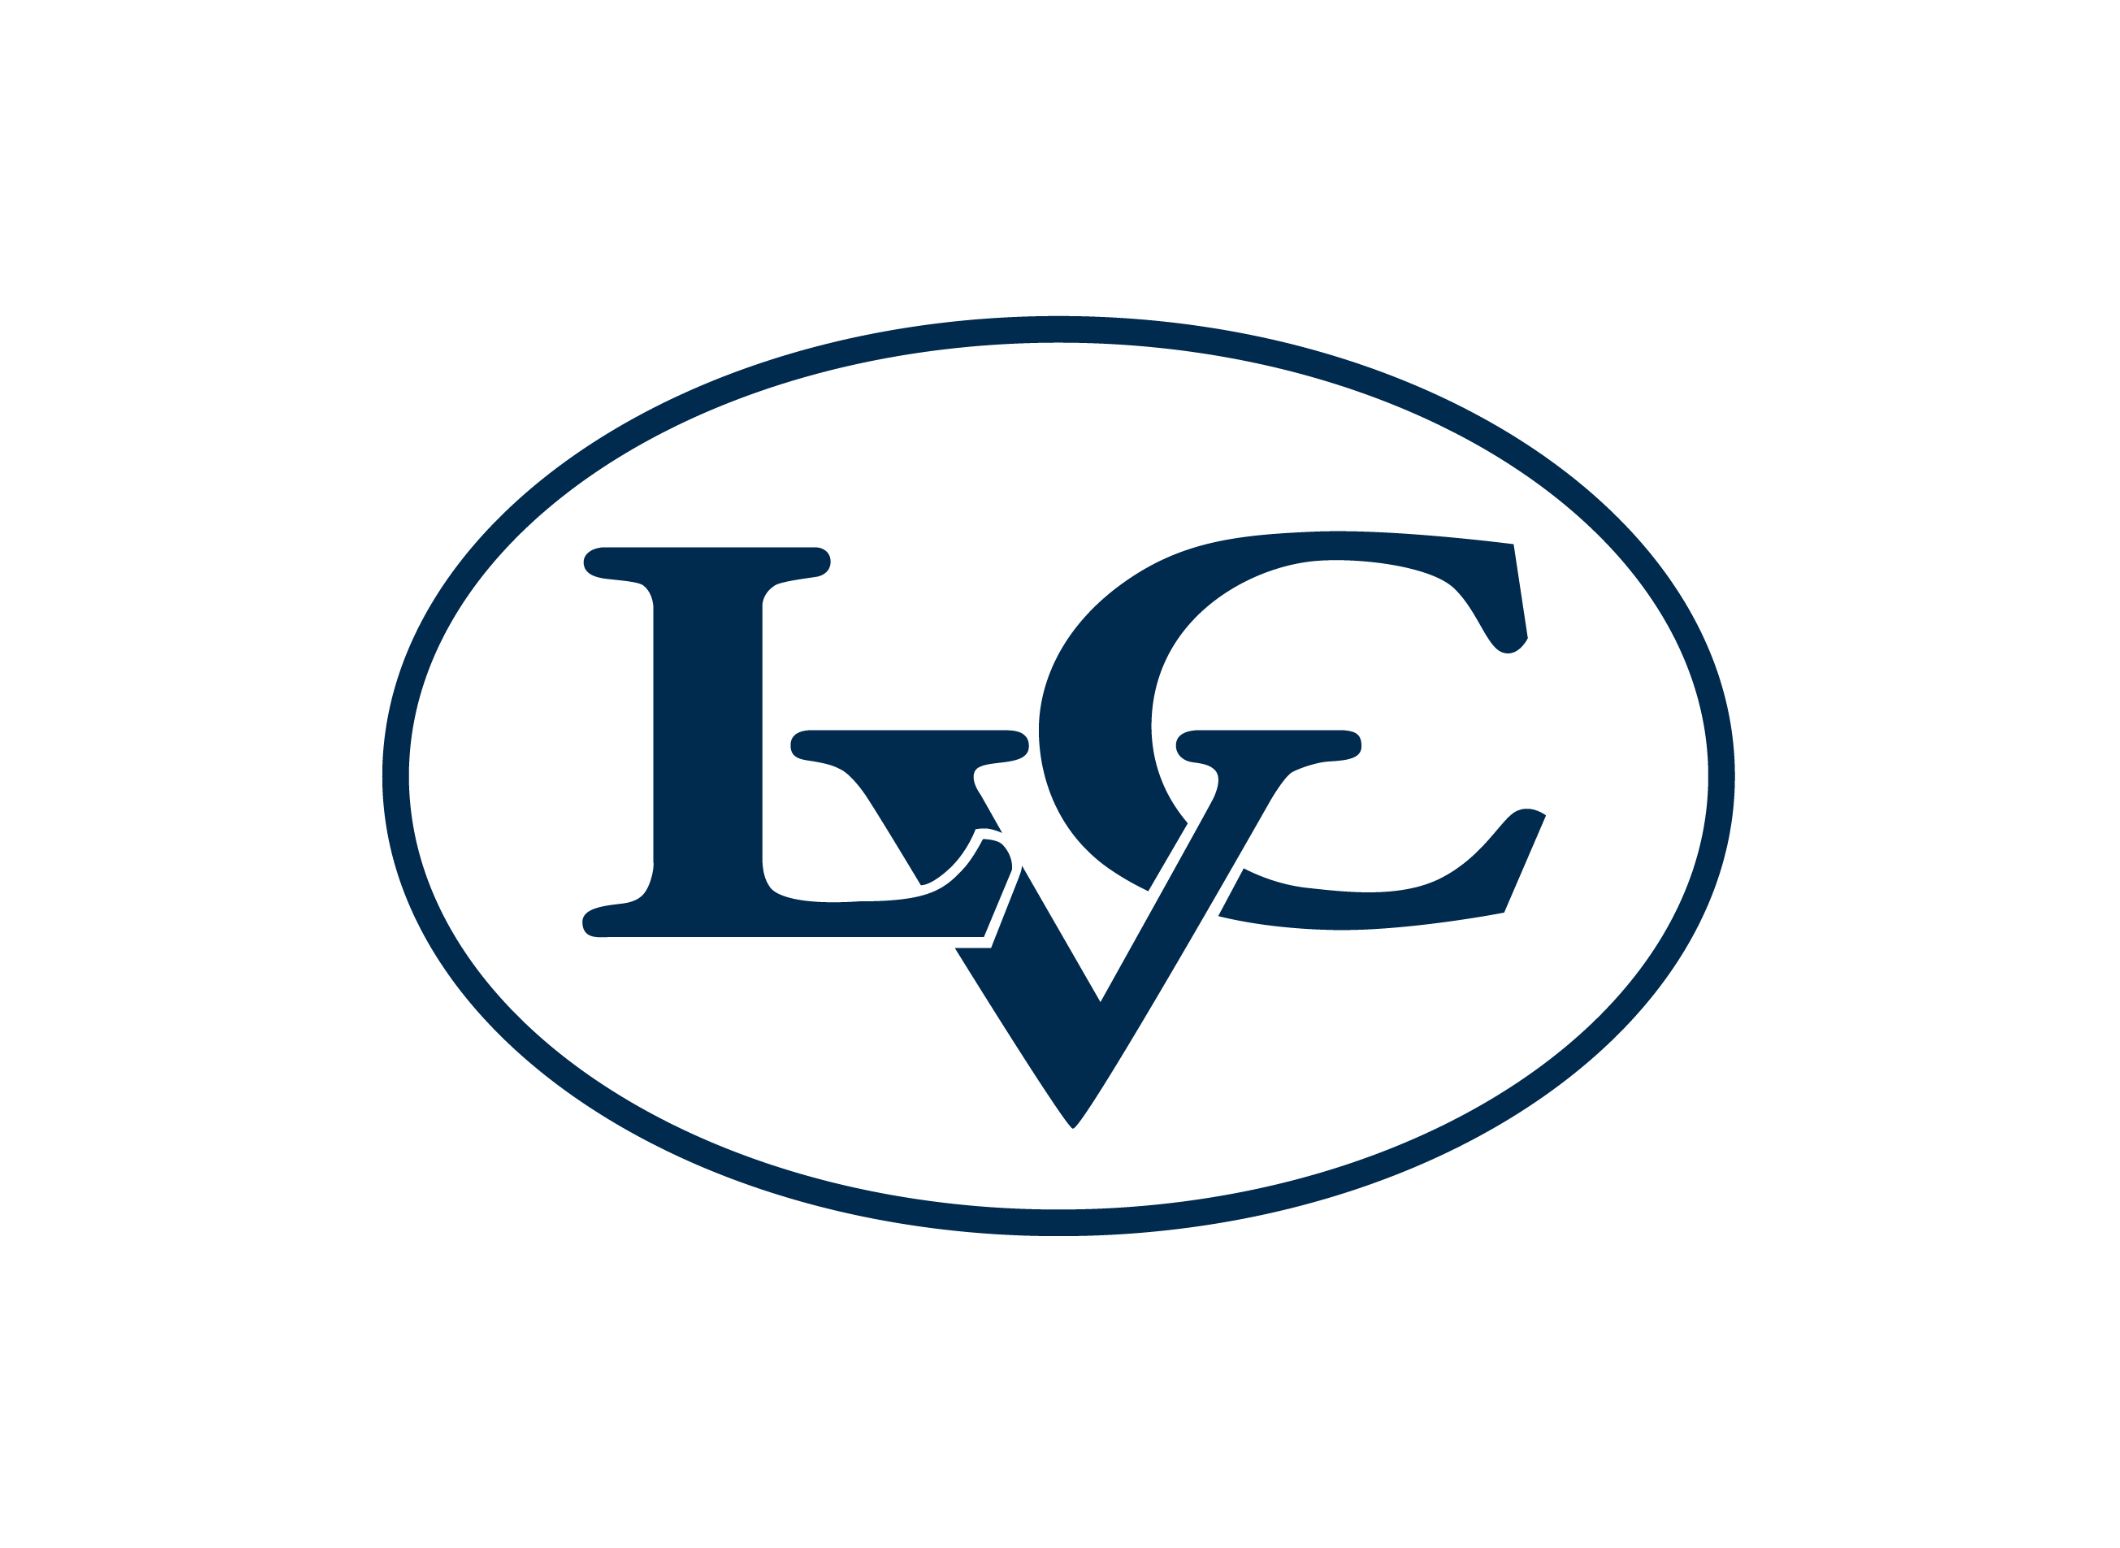 LVC oval logo in blue